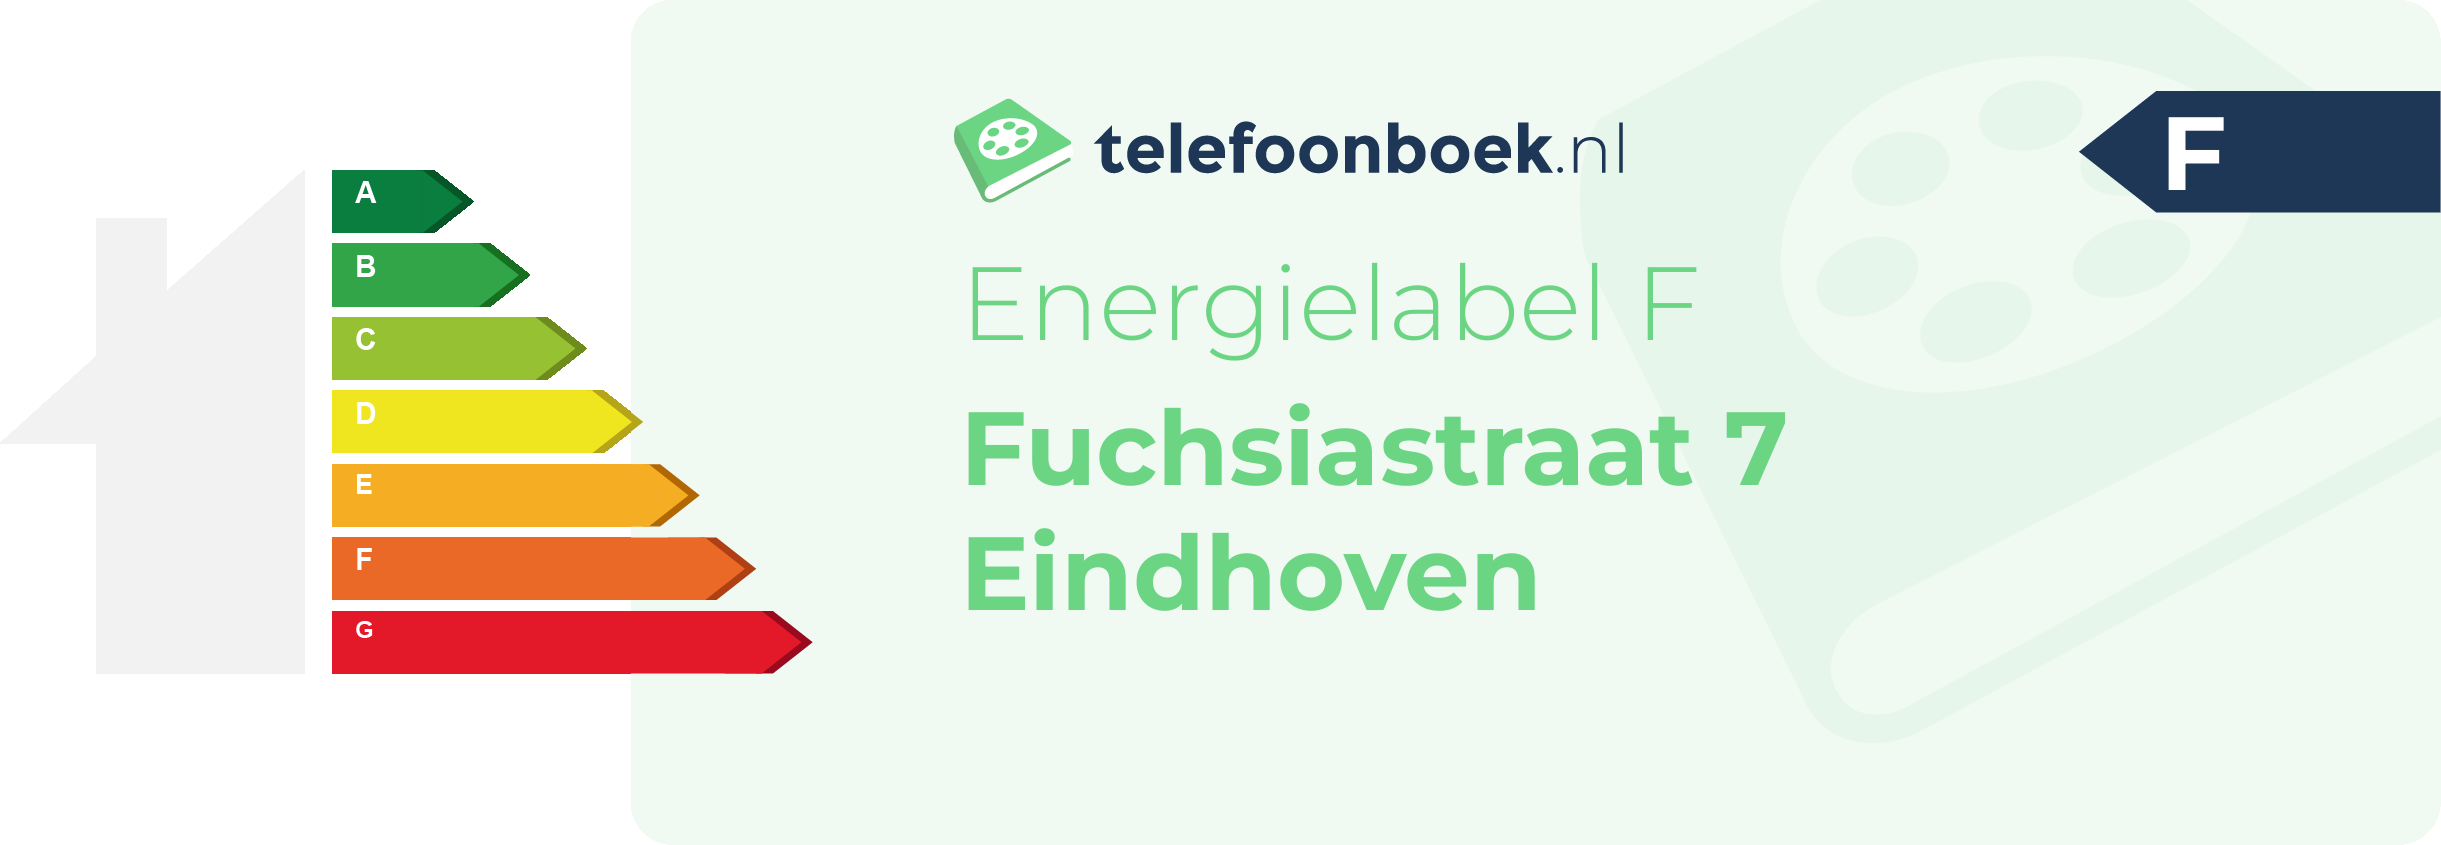 Energielabel Fuchsiastraat 7 Eindhoven